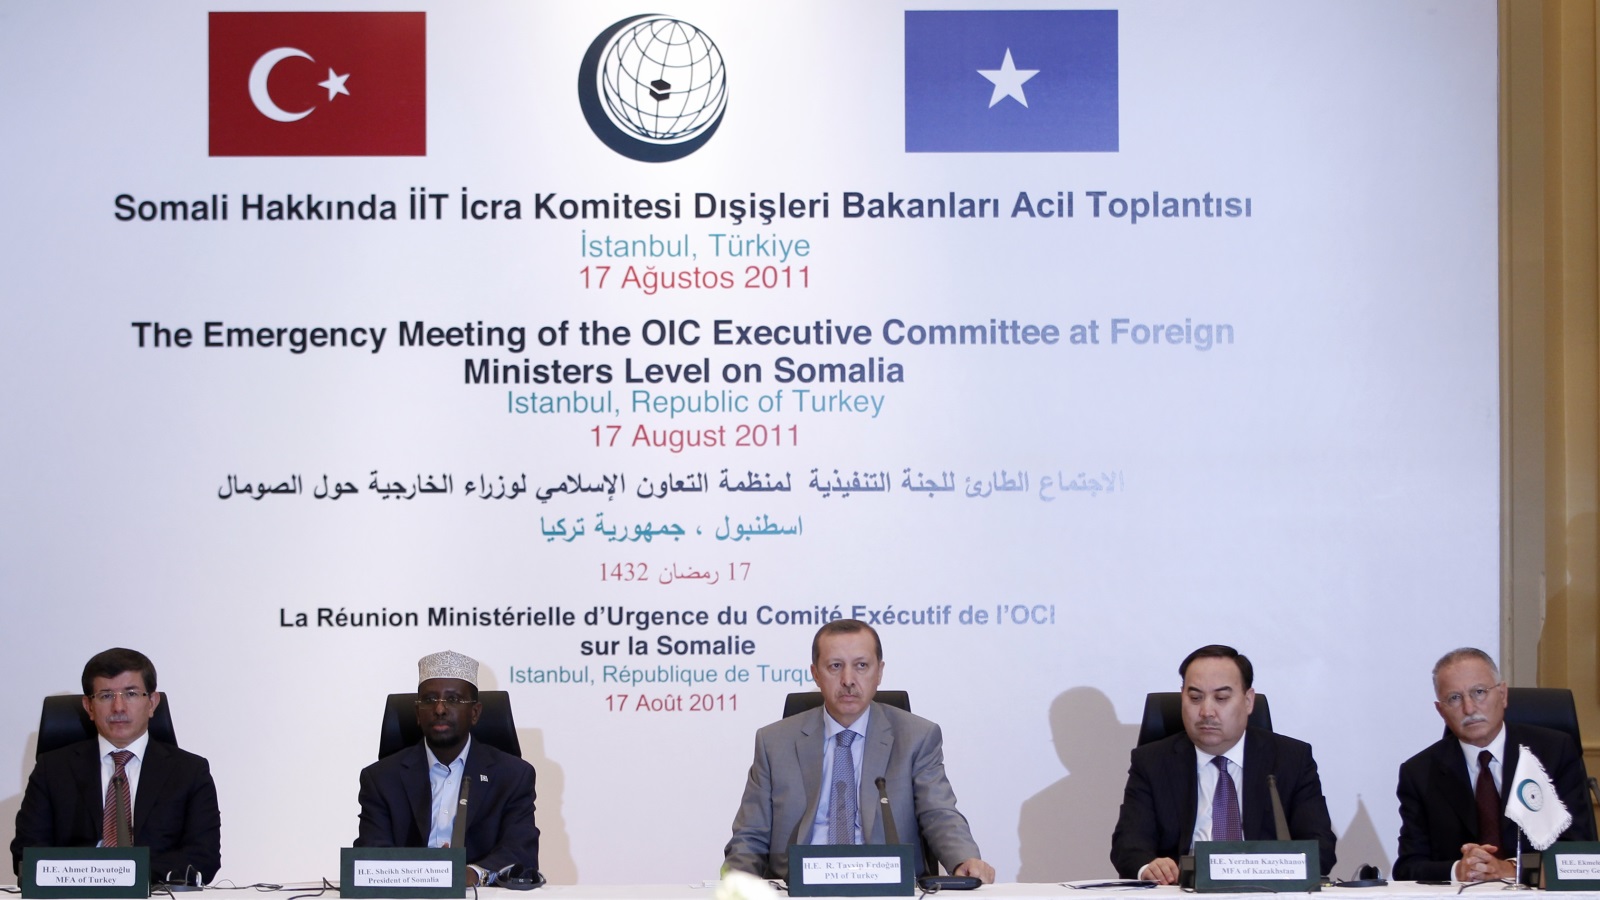 اجتماع طارئ على المستوى الوزاري للجنة التنفيذية لمنظمة التعاون الإسلامي في إسطنبول لمناقشة الوضع الإنساني المتدهور في الصومال 2011 (رويترز)